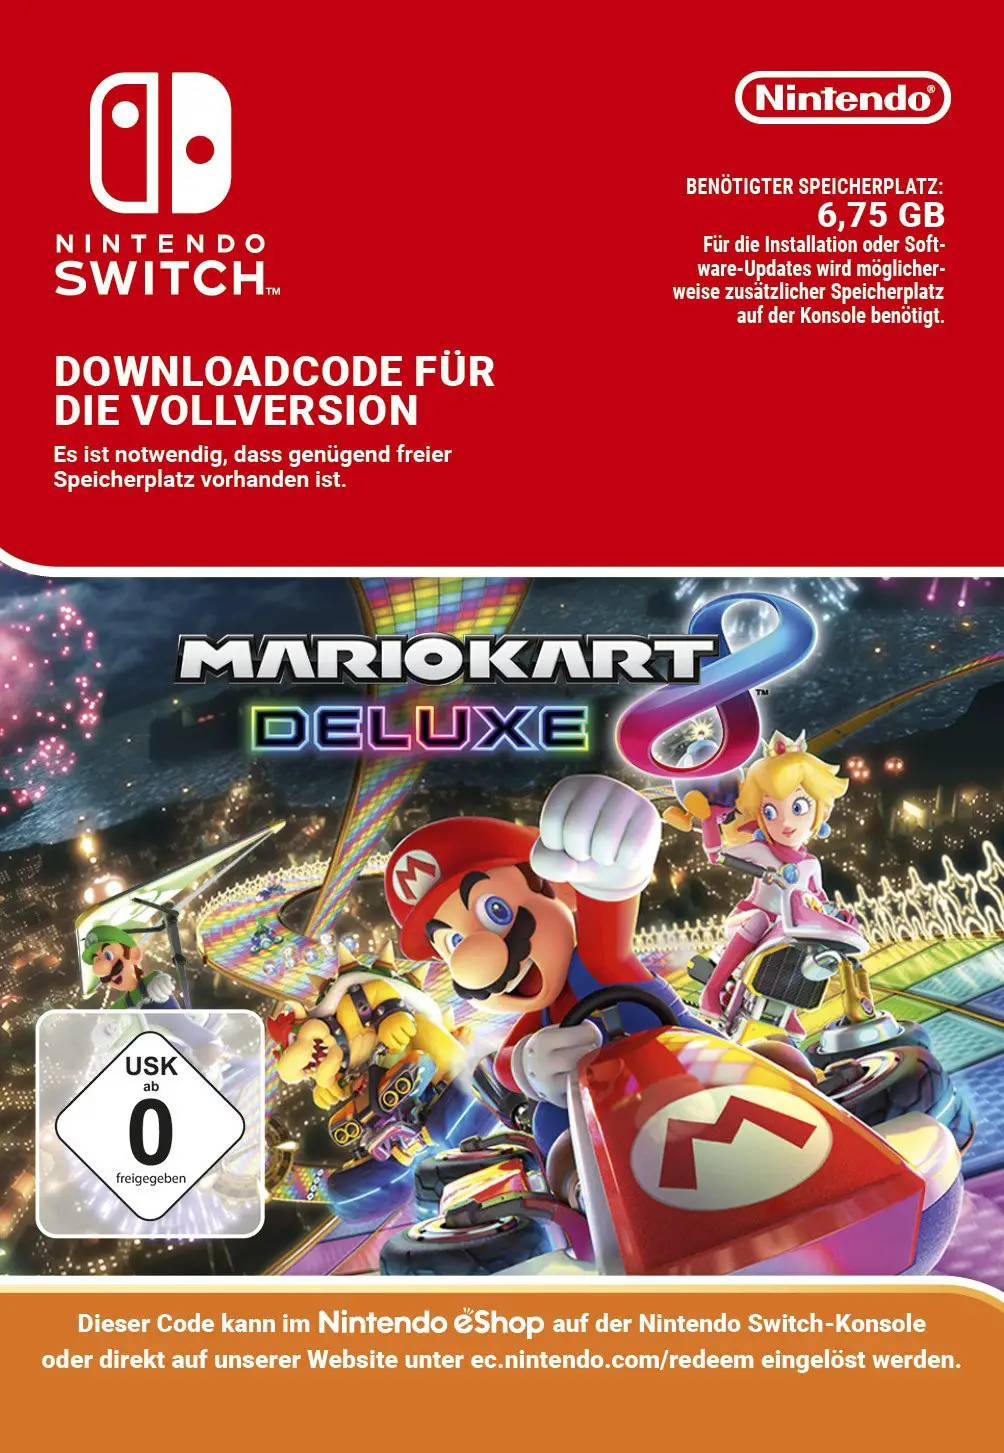 Tamaño de descarga de Mario Kart 8 Deluxe Amazon Alemania